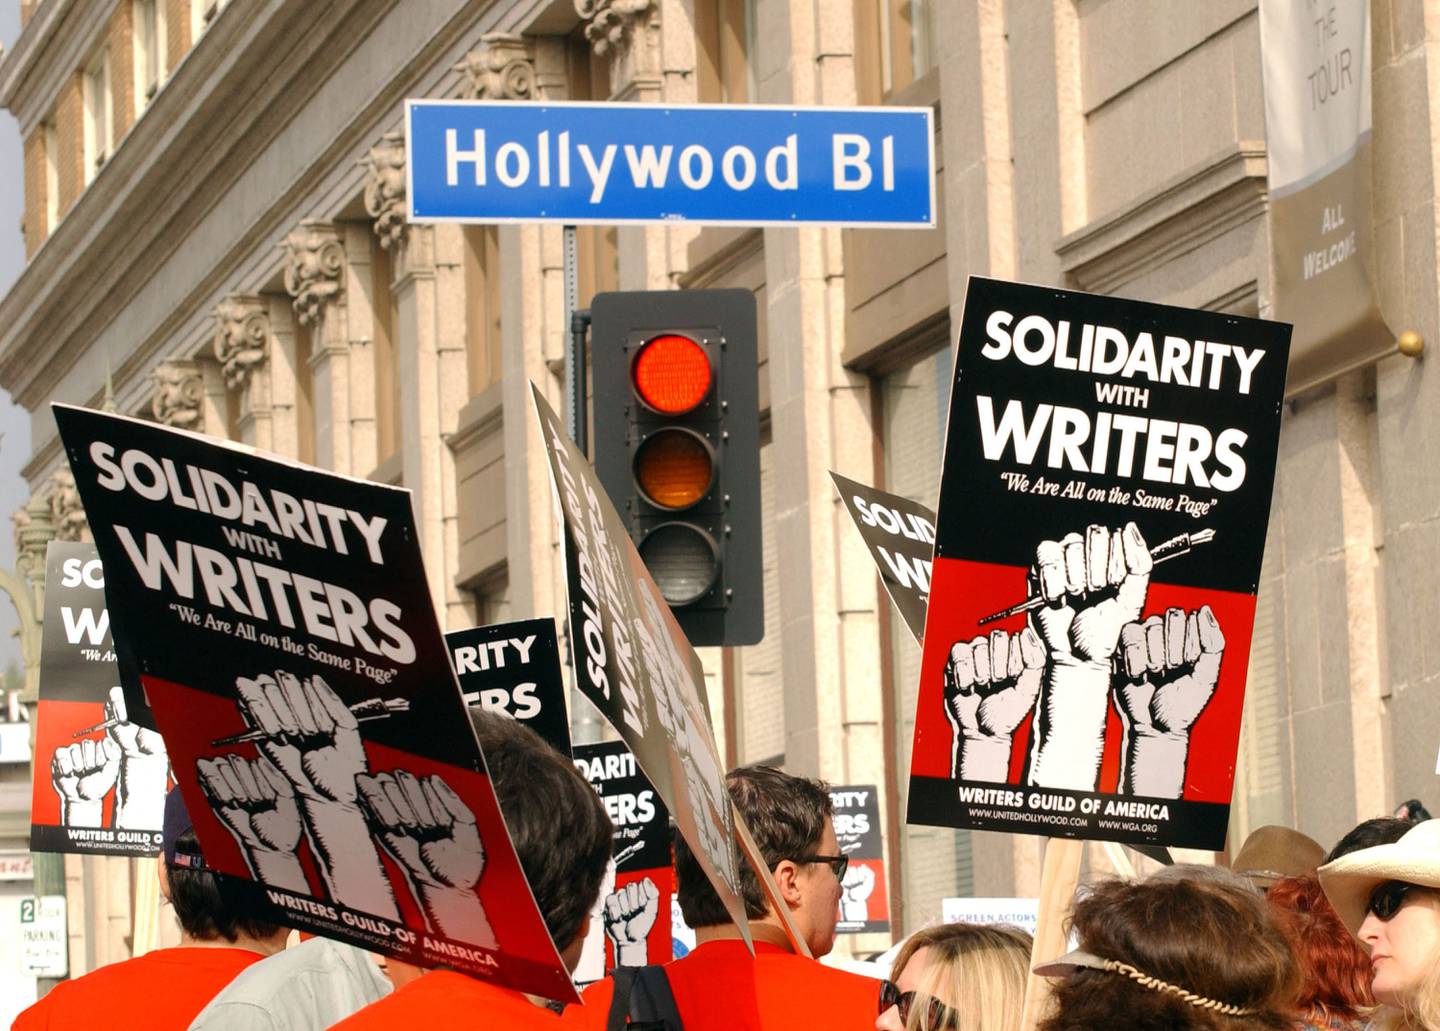 Da manusforfatterne gikk til streik i 2007 varte arbeidskonflikten i 100 dager.